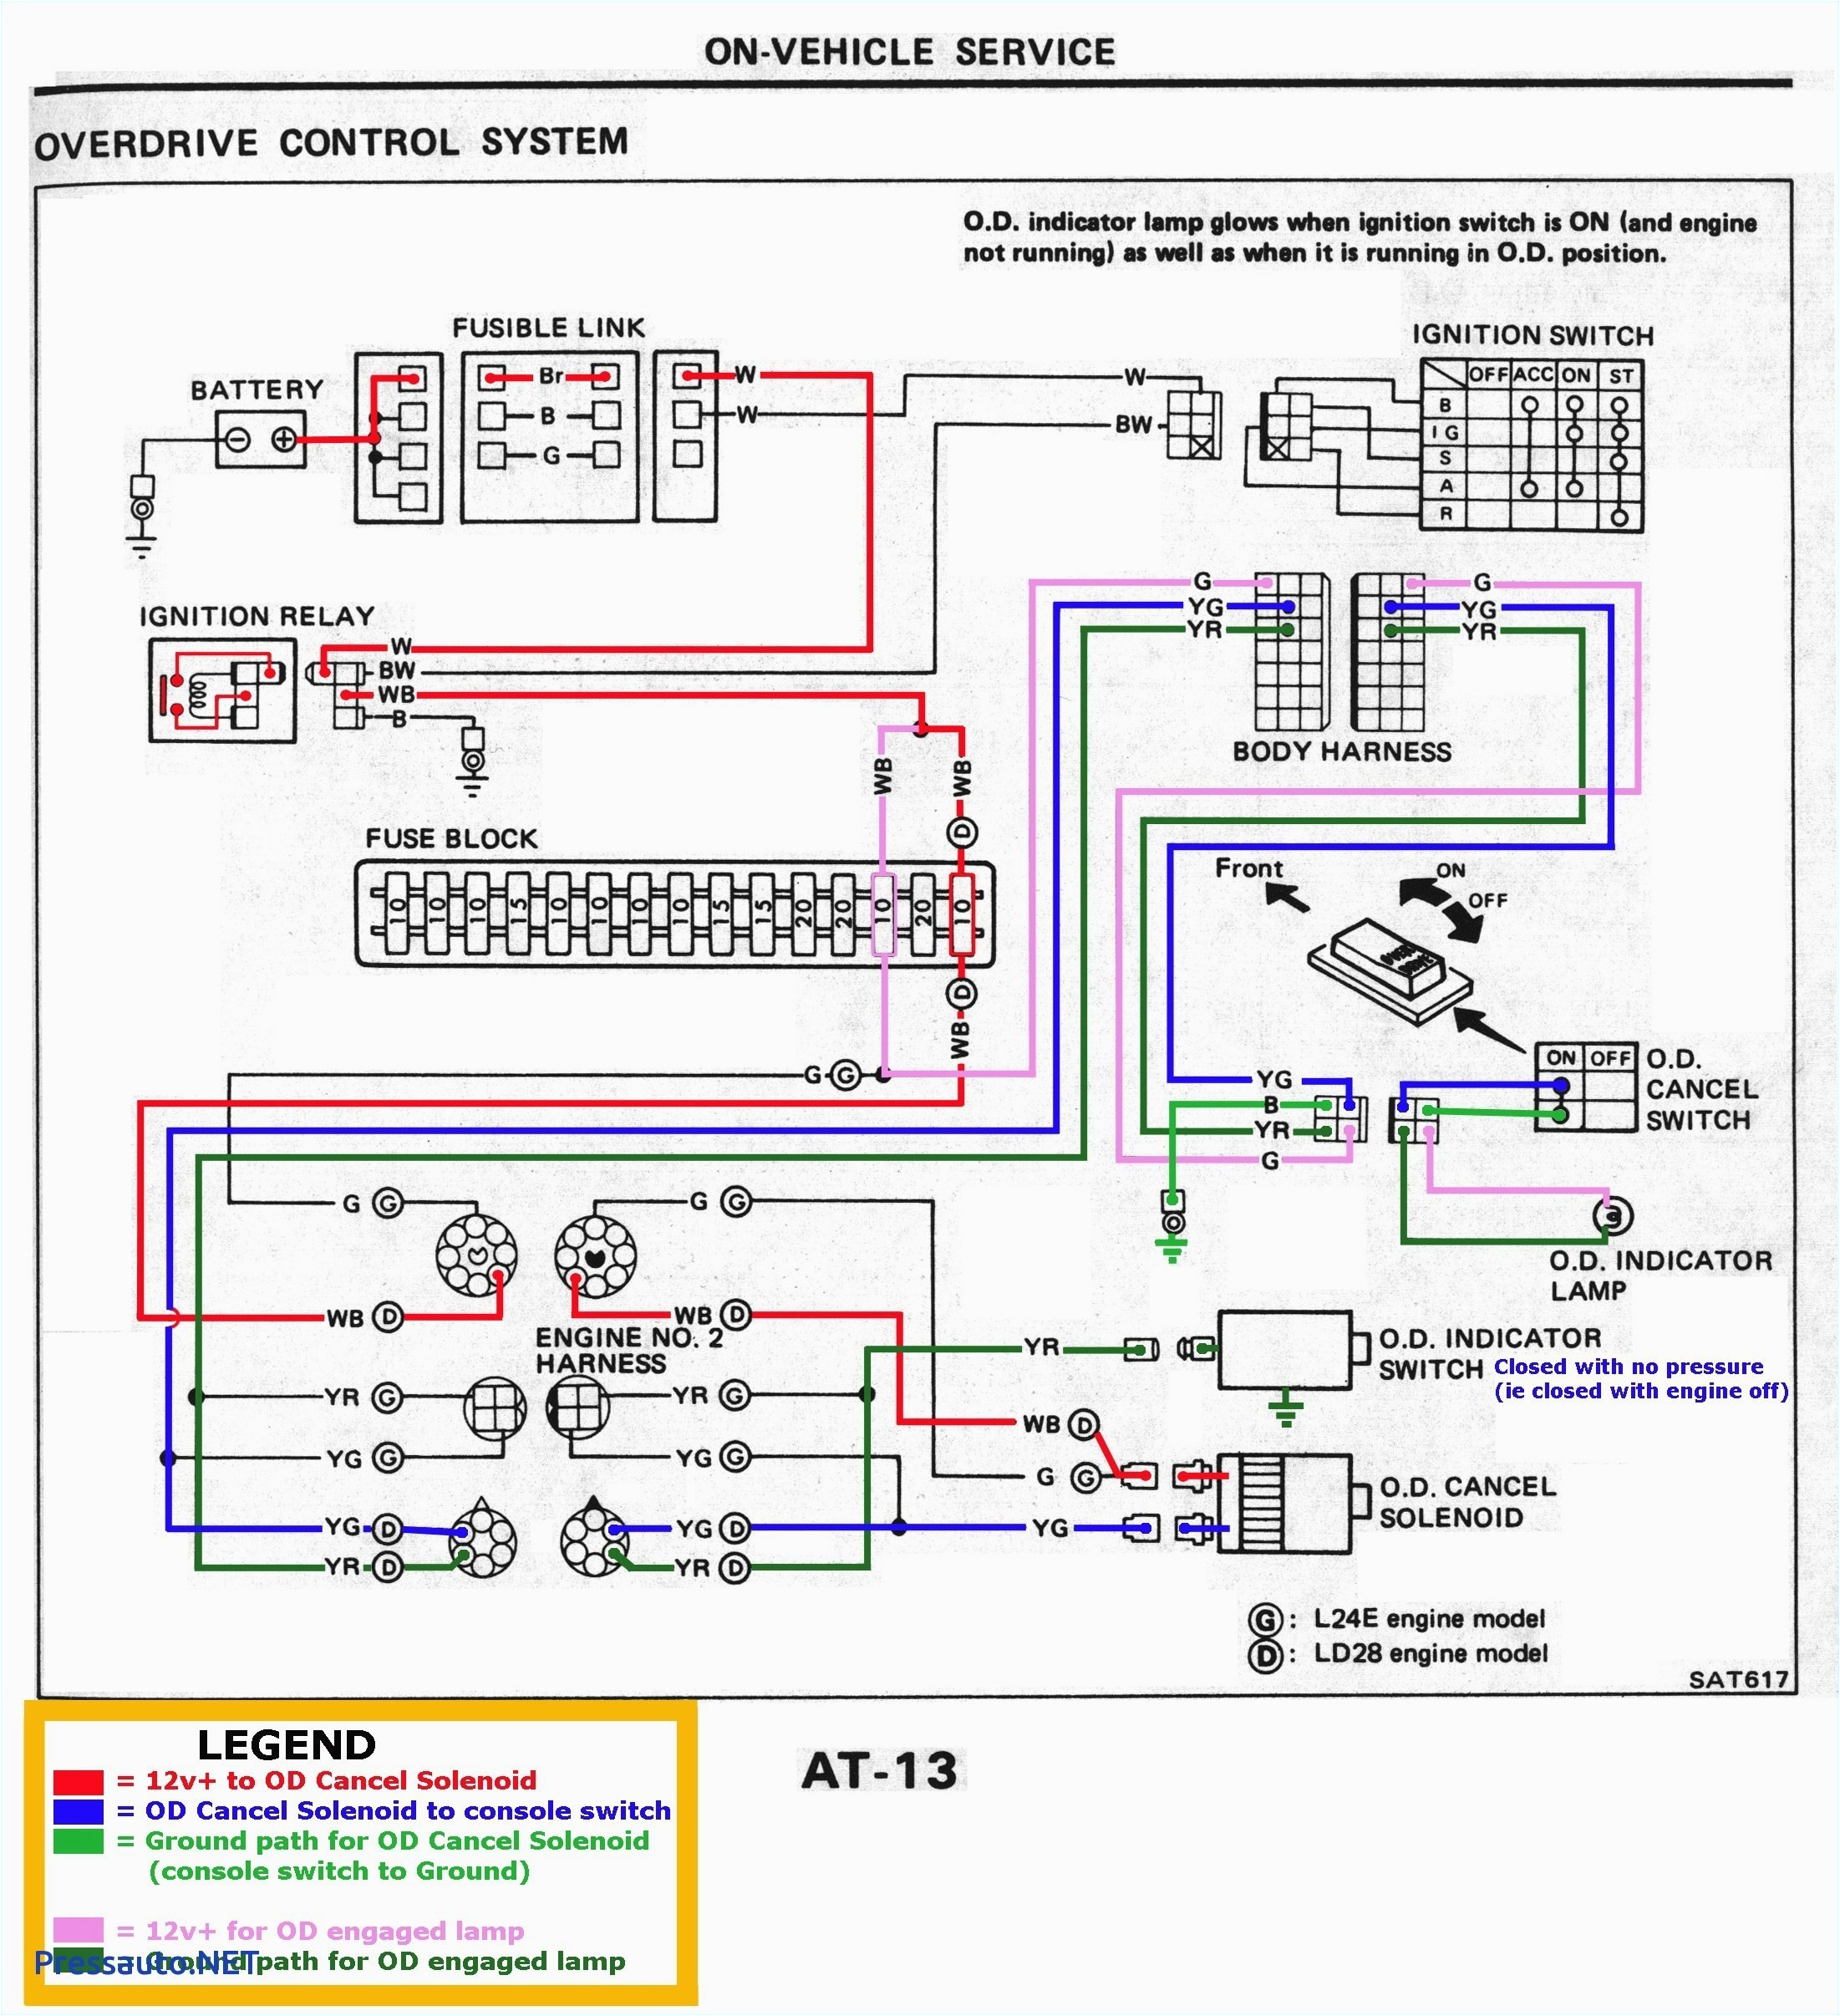 fish wire diagram auto diagram databasefish wire diagram schema diagram database fish house wiring diagram fish